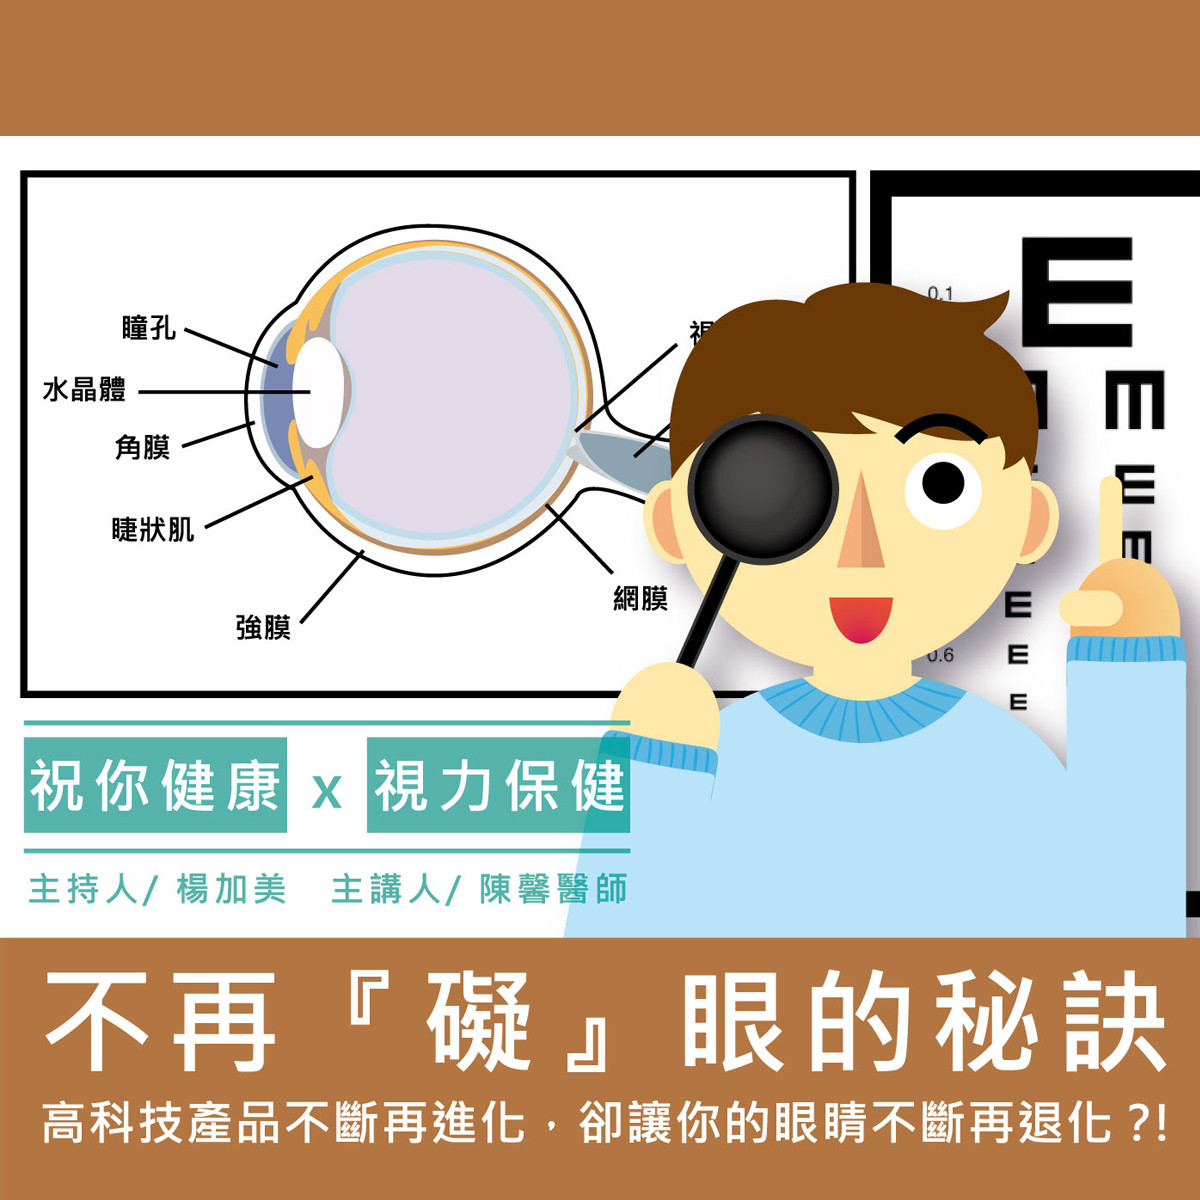 【祝你健康】視力保健 - 6.近視封面圖